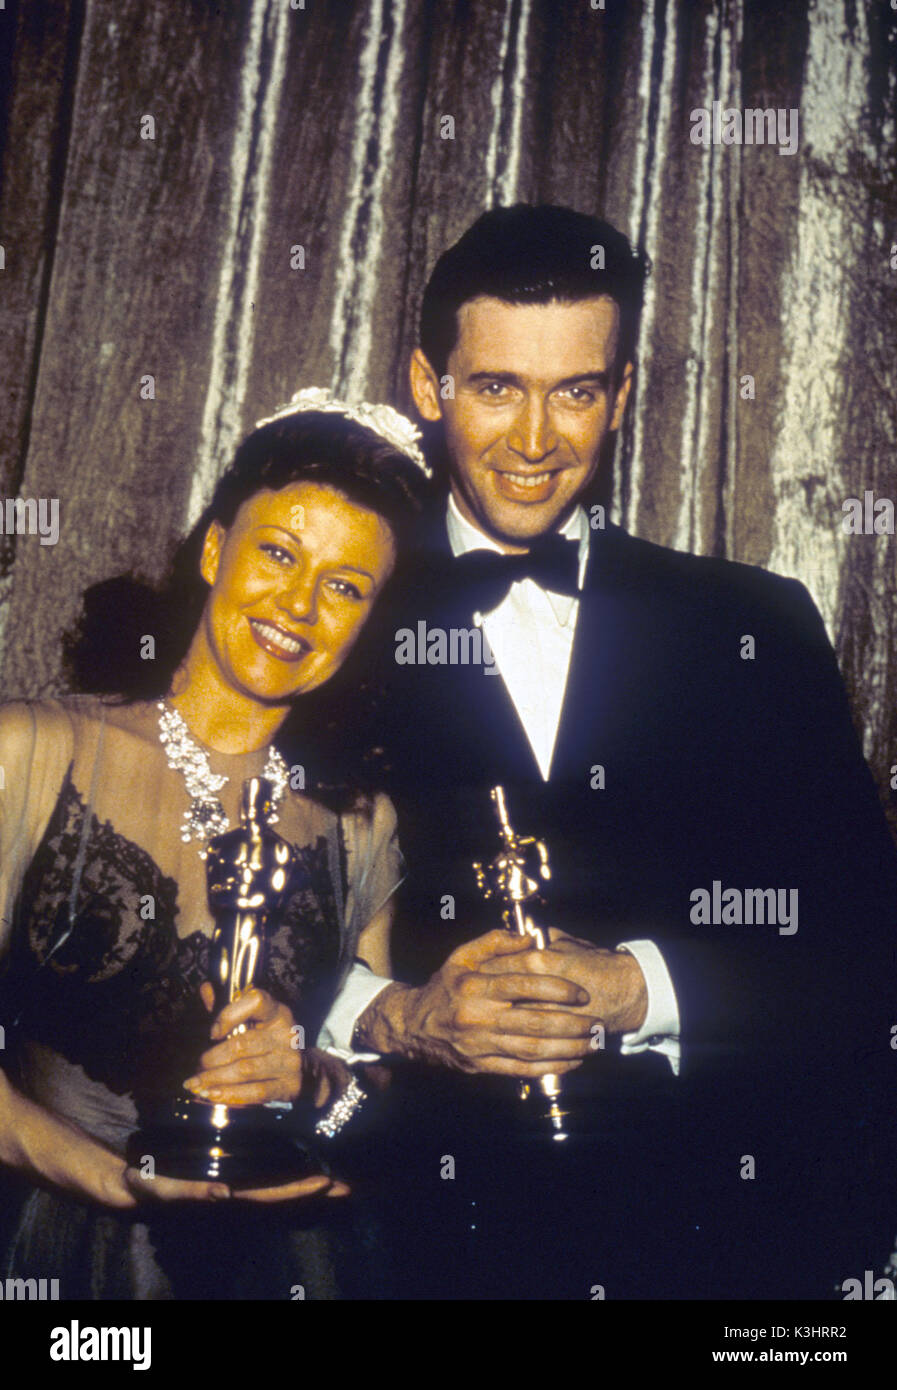 ACADEMY AWARDS CEREMONY 1940 Oscar per la migliore attrice - Ginger Rogers in KITTY FOYLE Oscar per il miglior attore - JAMES STEWART nella storia di Filadelfia Foto Stock